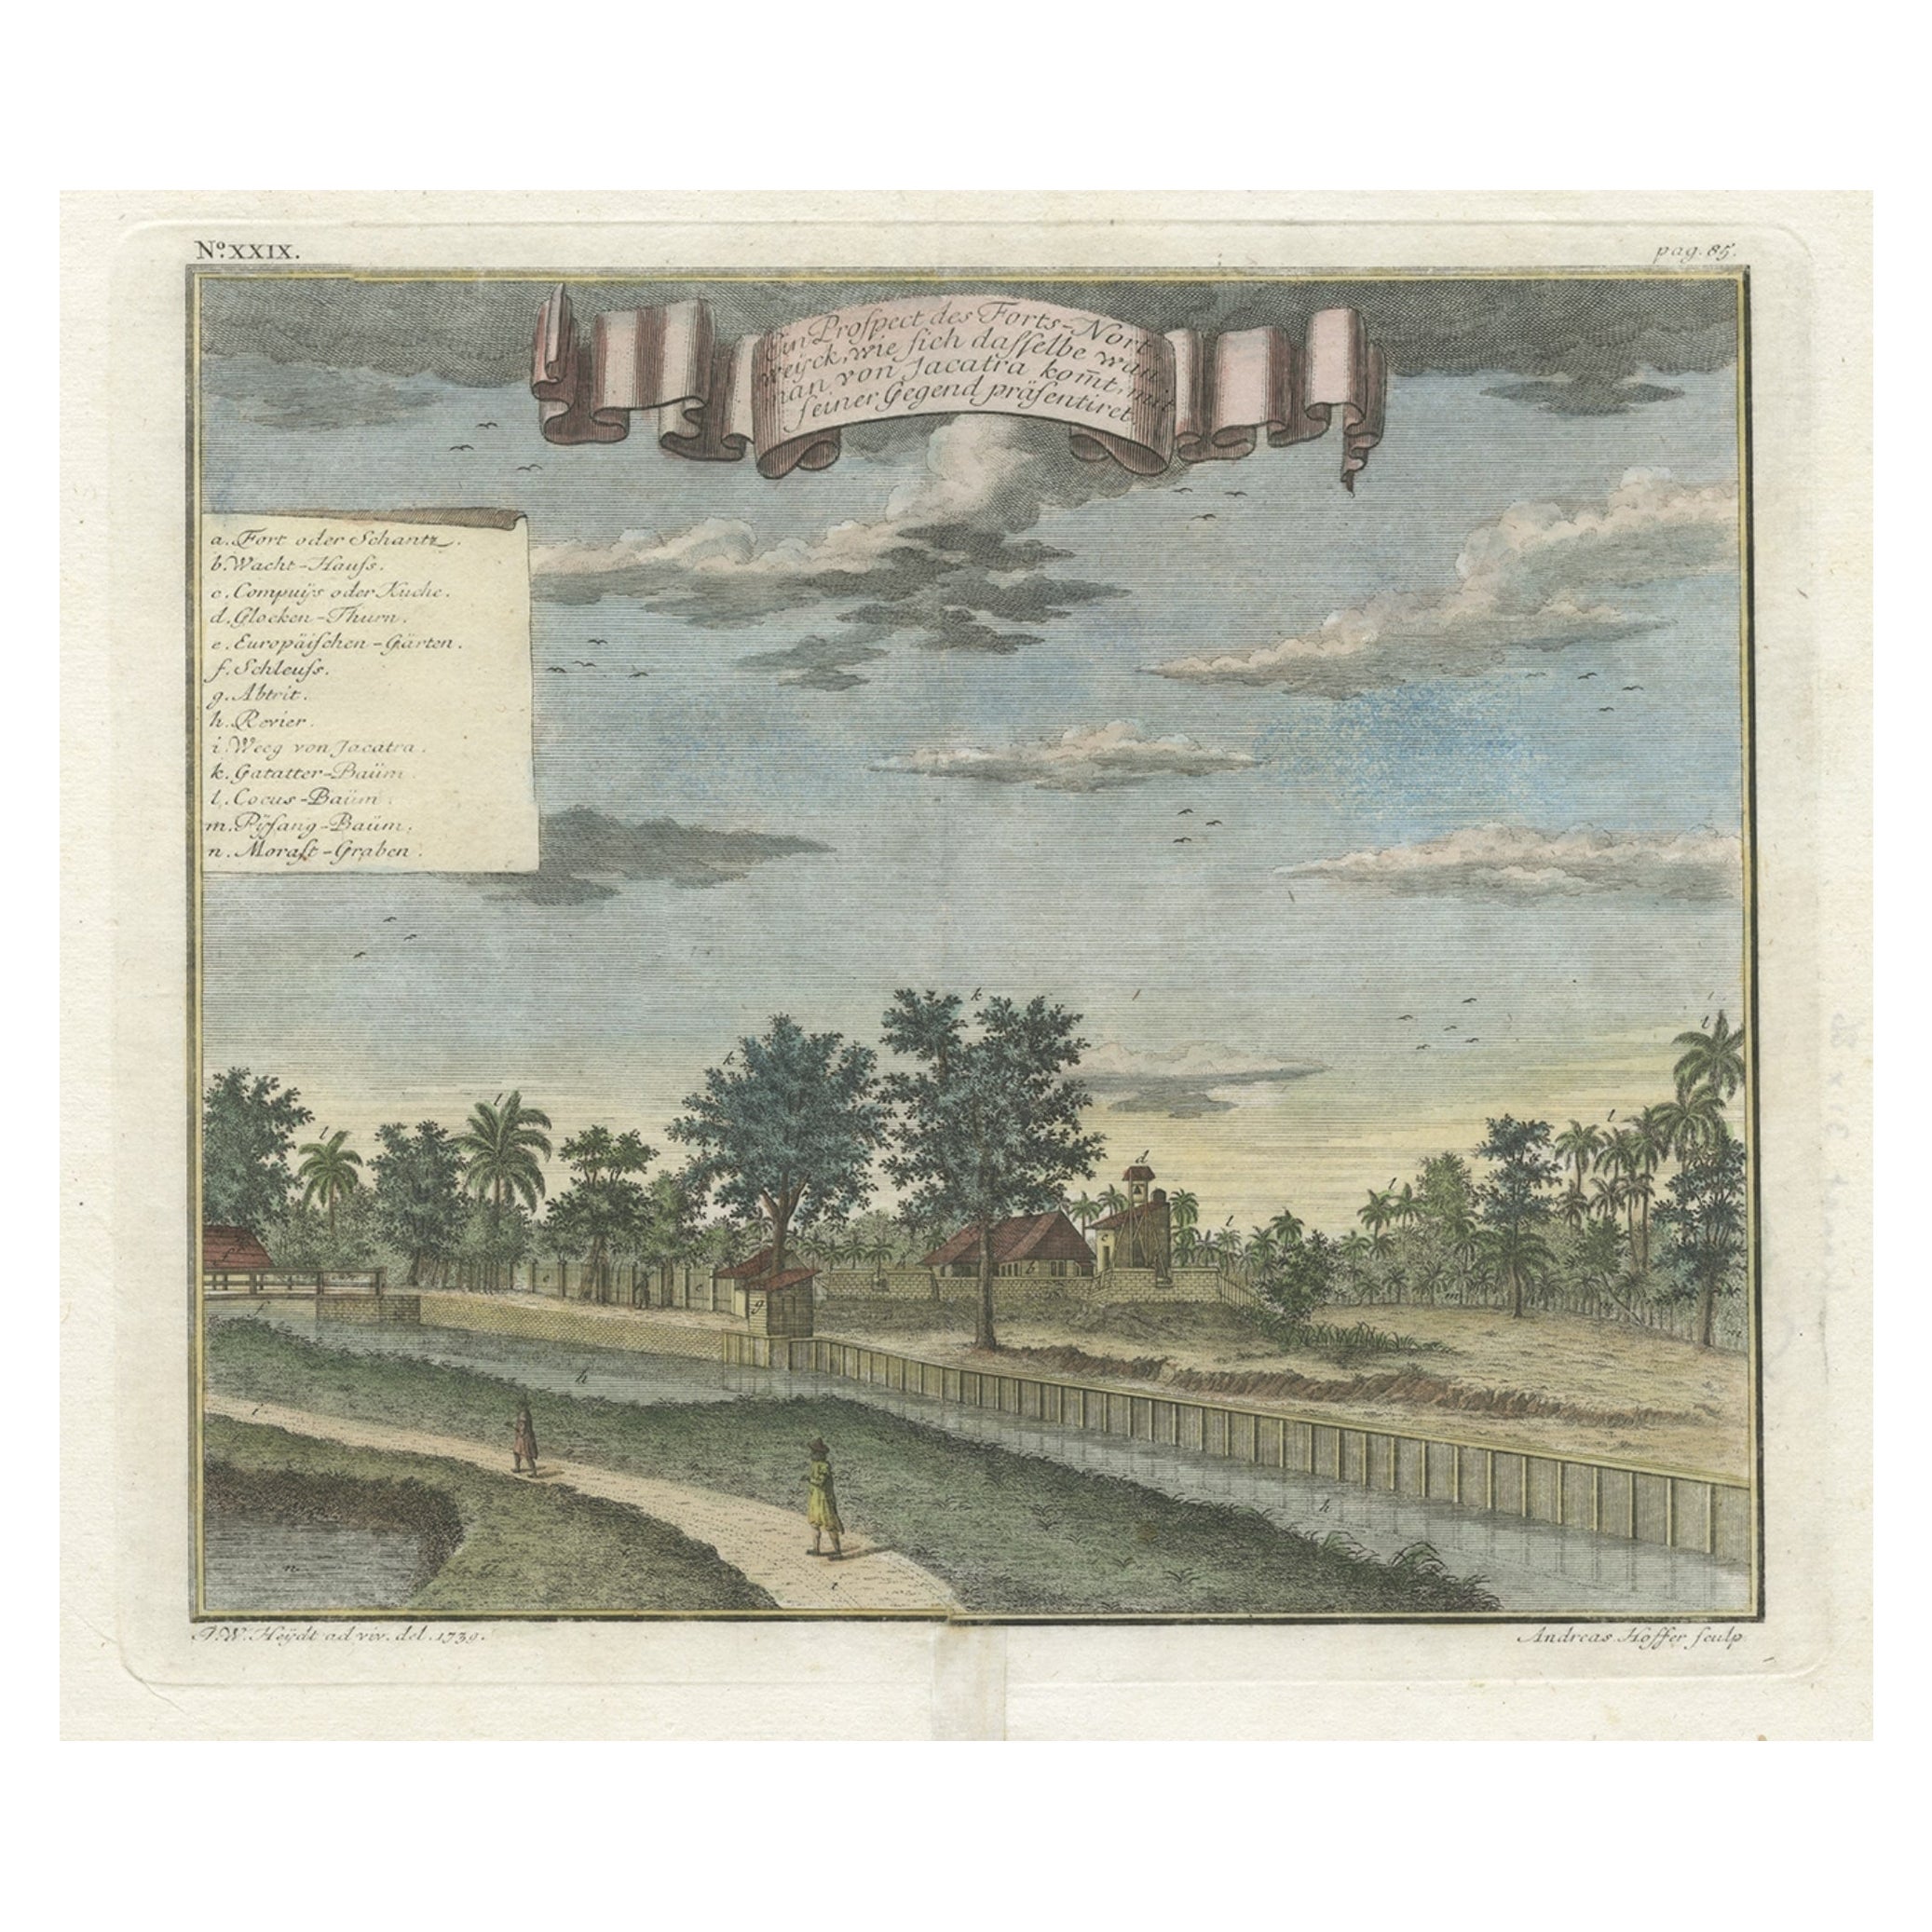 Old Antique Print of Fort Noordwijk, Batavia 'Jakarta, Indonesia', 1739